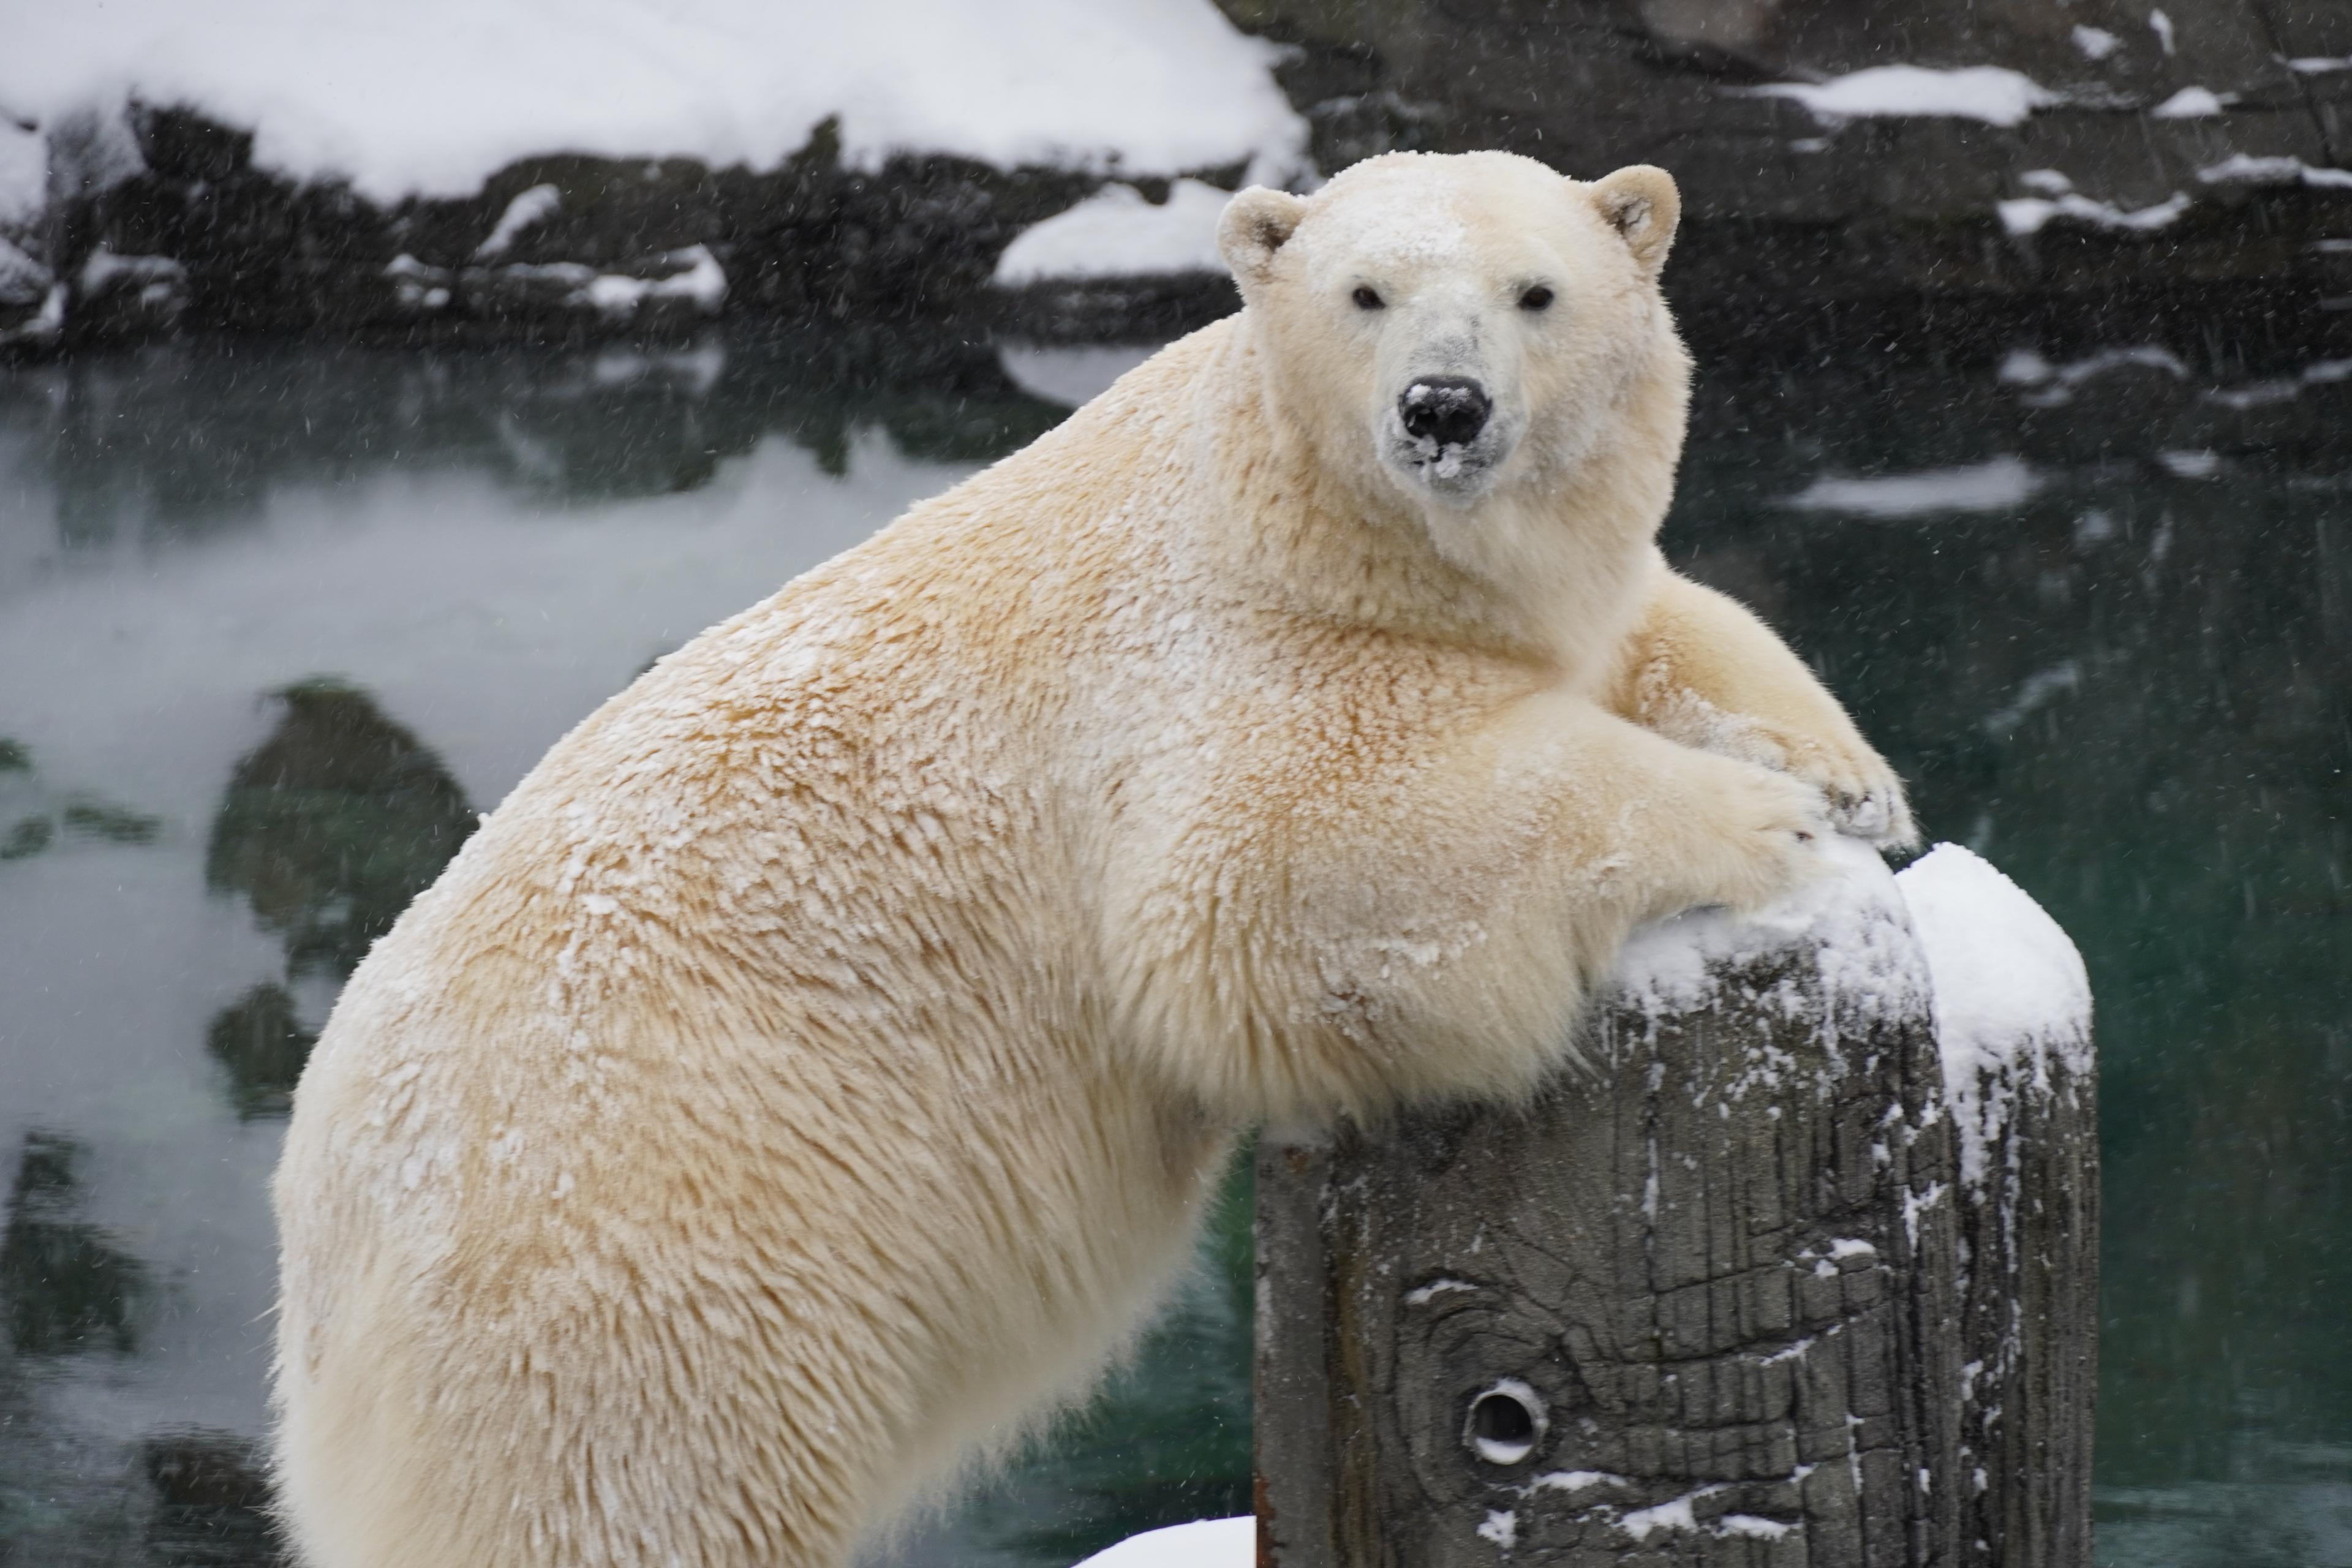 Eisbär im Schnee: Ganz in seinem Element - Themenwelt Yukon Bay im Erlebnis-Zoo Hannover